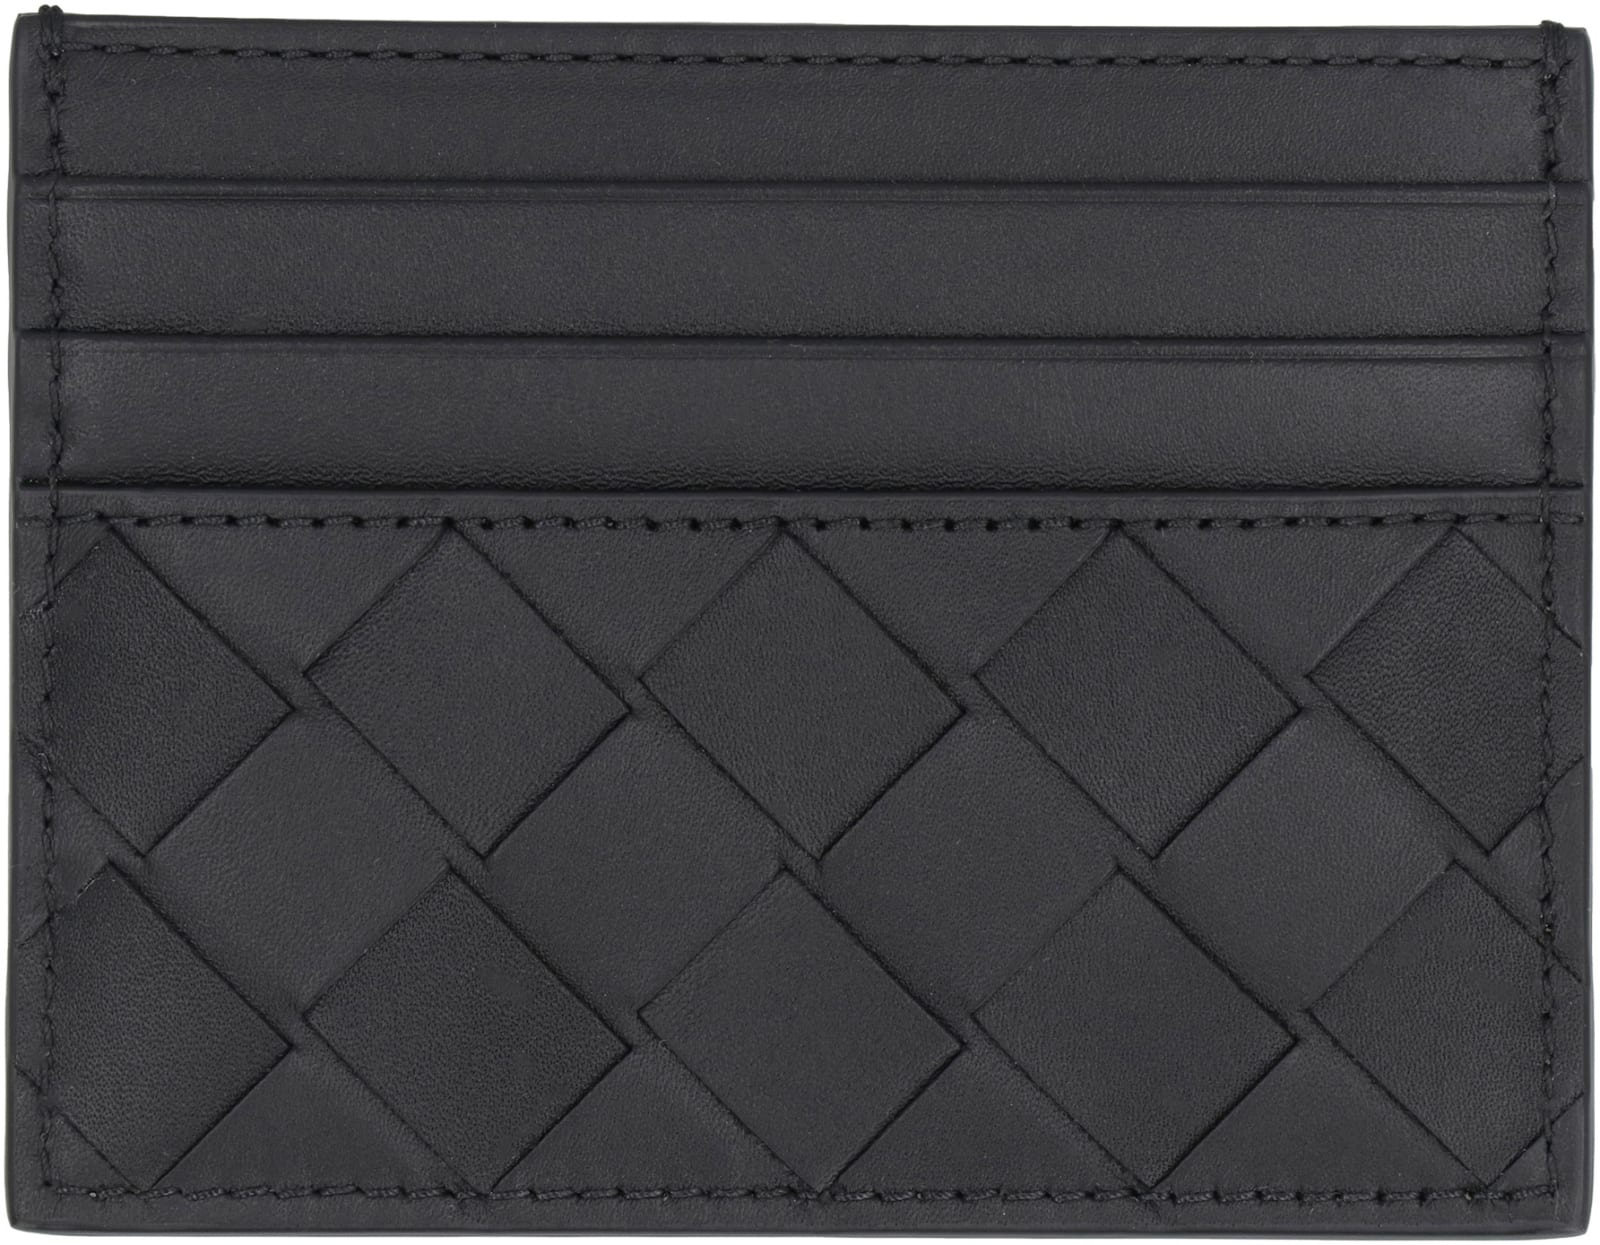 Shop Bottega Veneta Intrecciato Card Case In Black